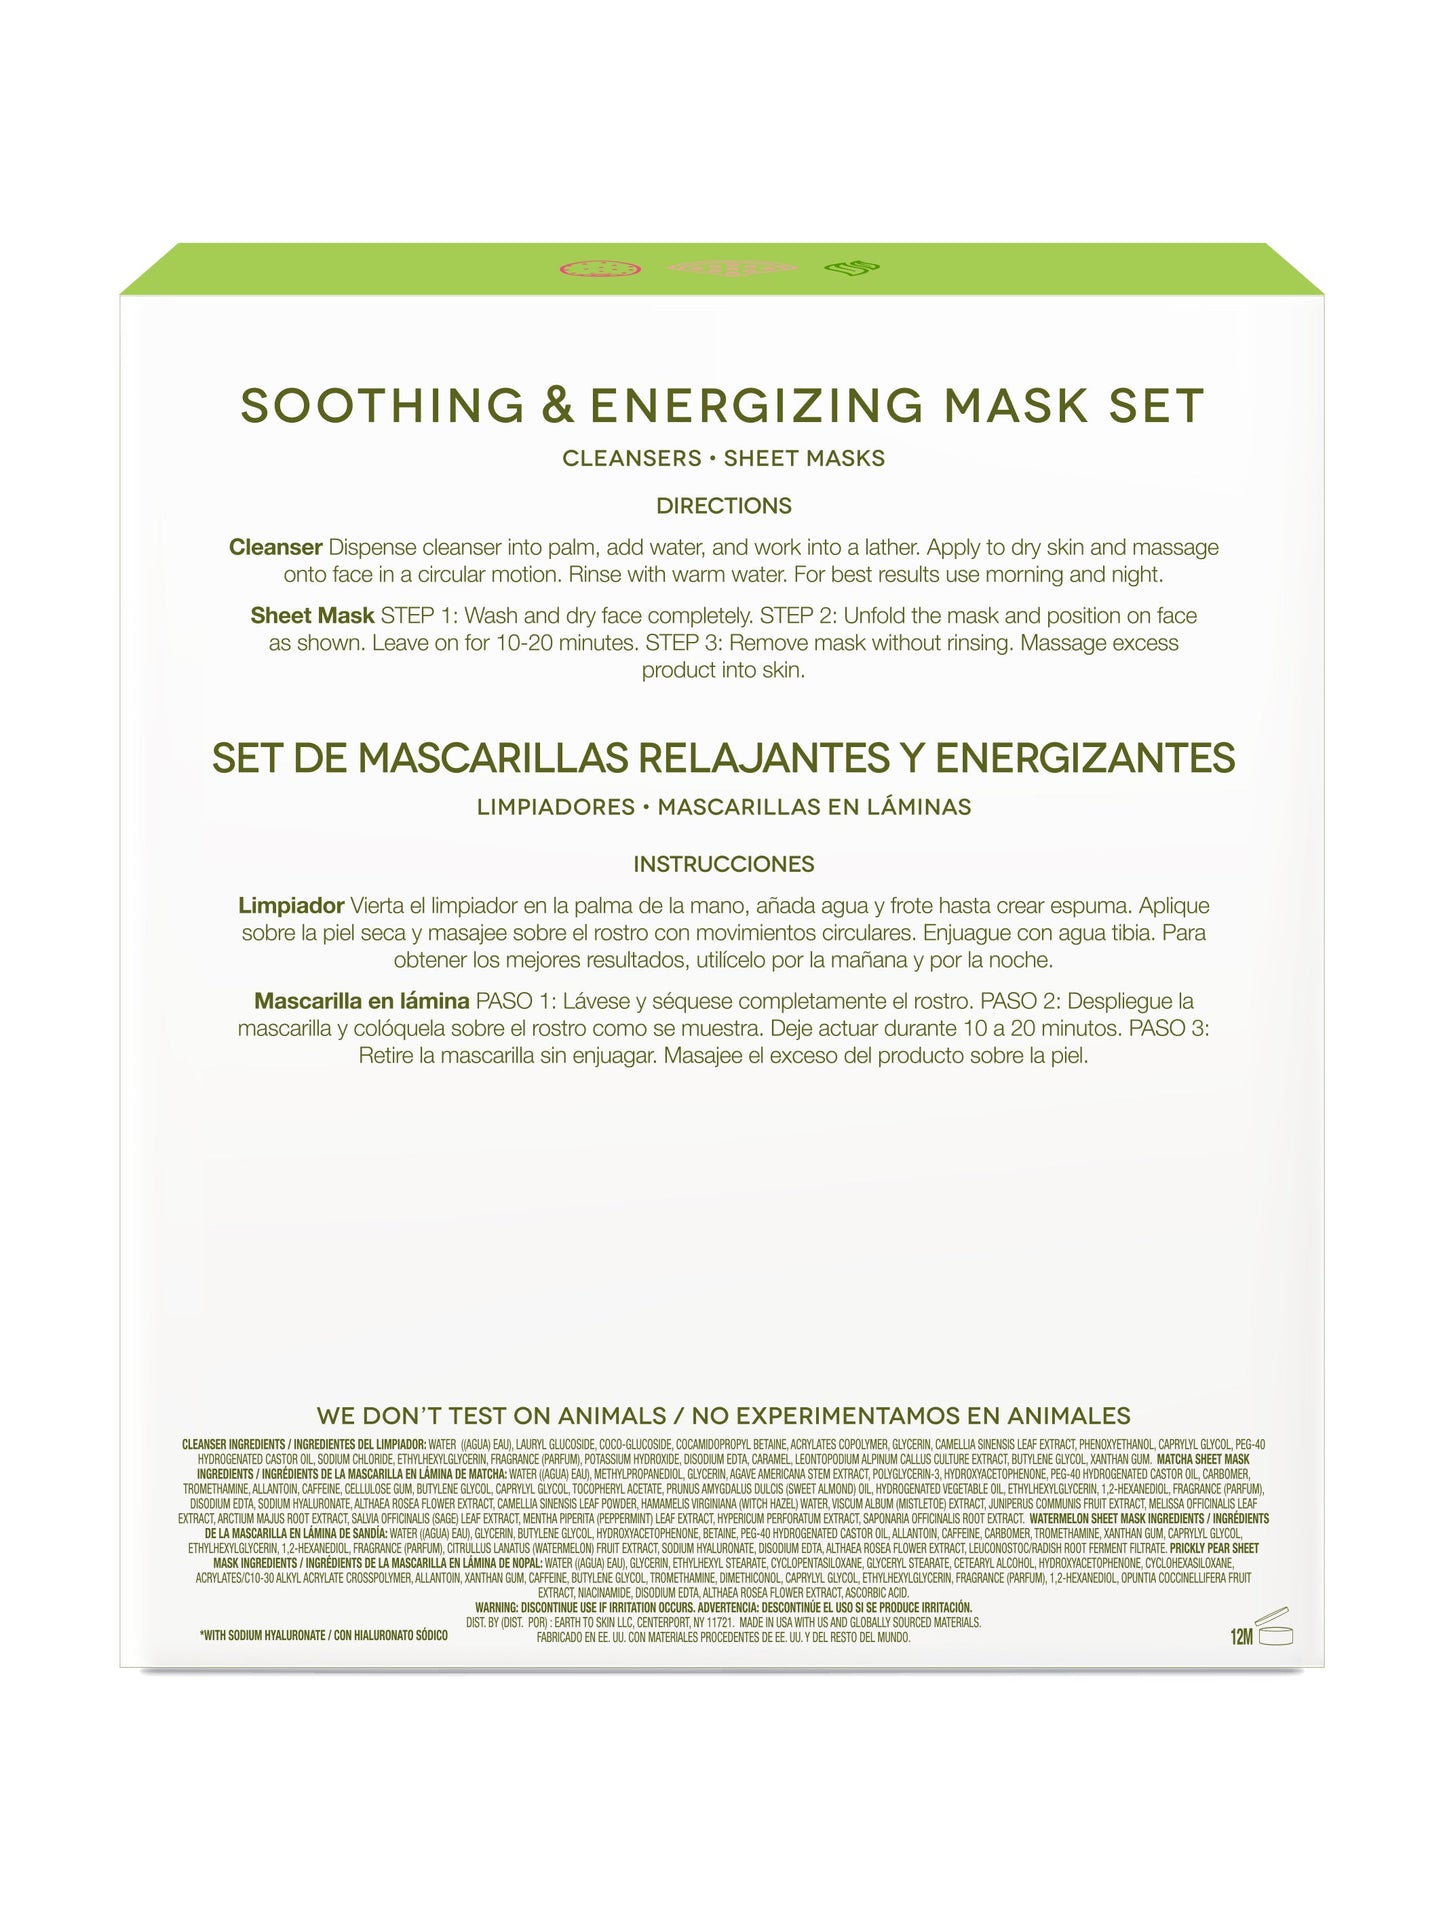 Soothing & Energizing Mask Set by EarthToSkin